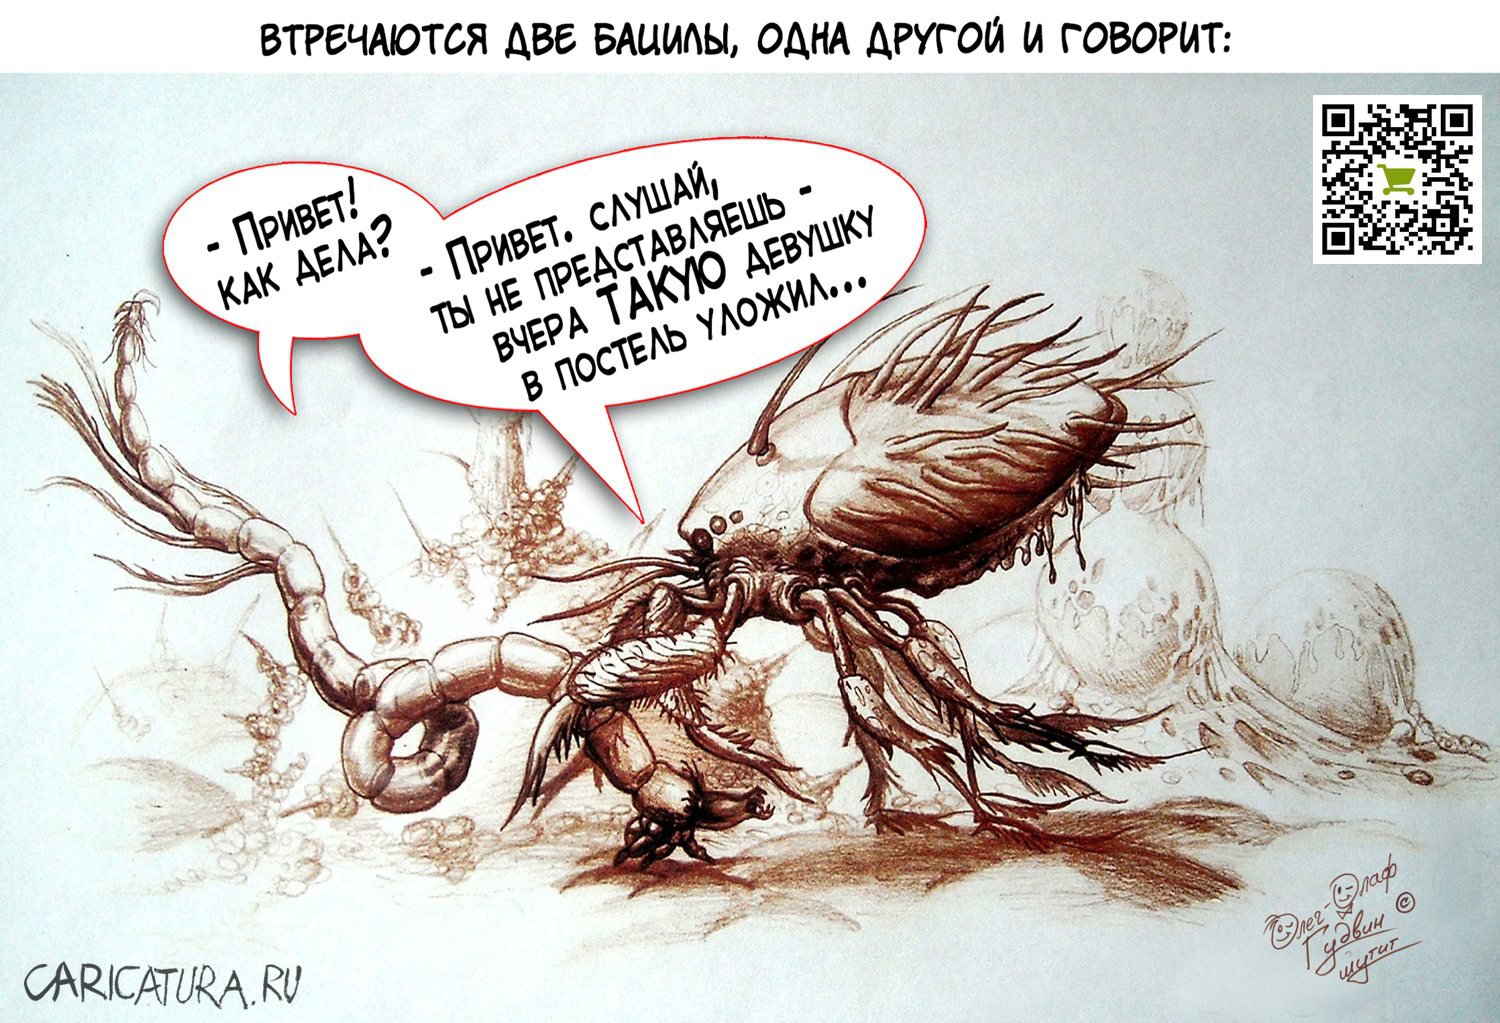 Карикатура "Микромир, вирусы в крови, склеенные эритроциты", Олег-Олаф Гудвин